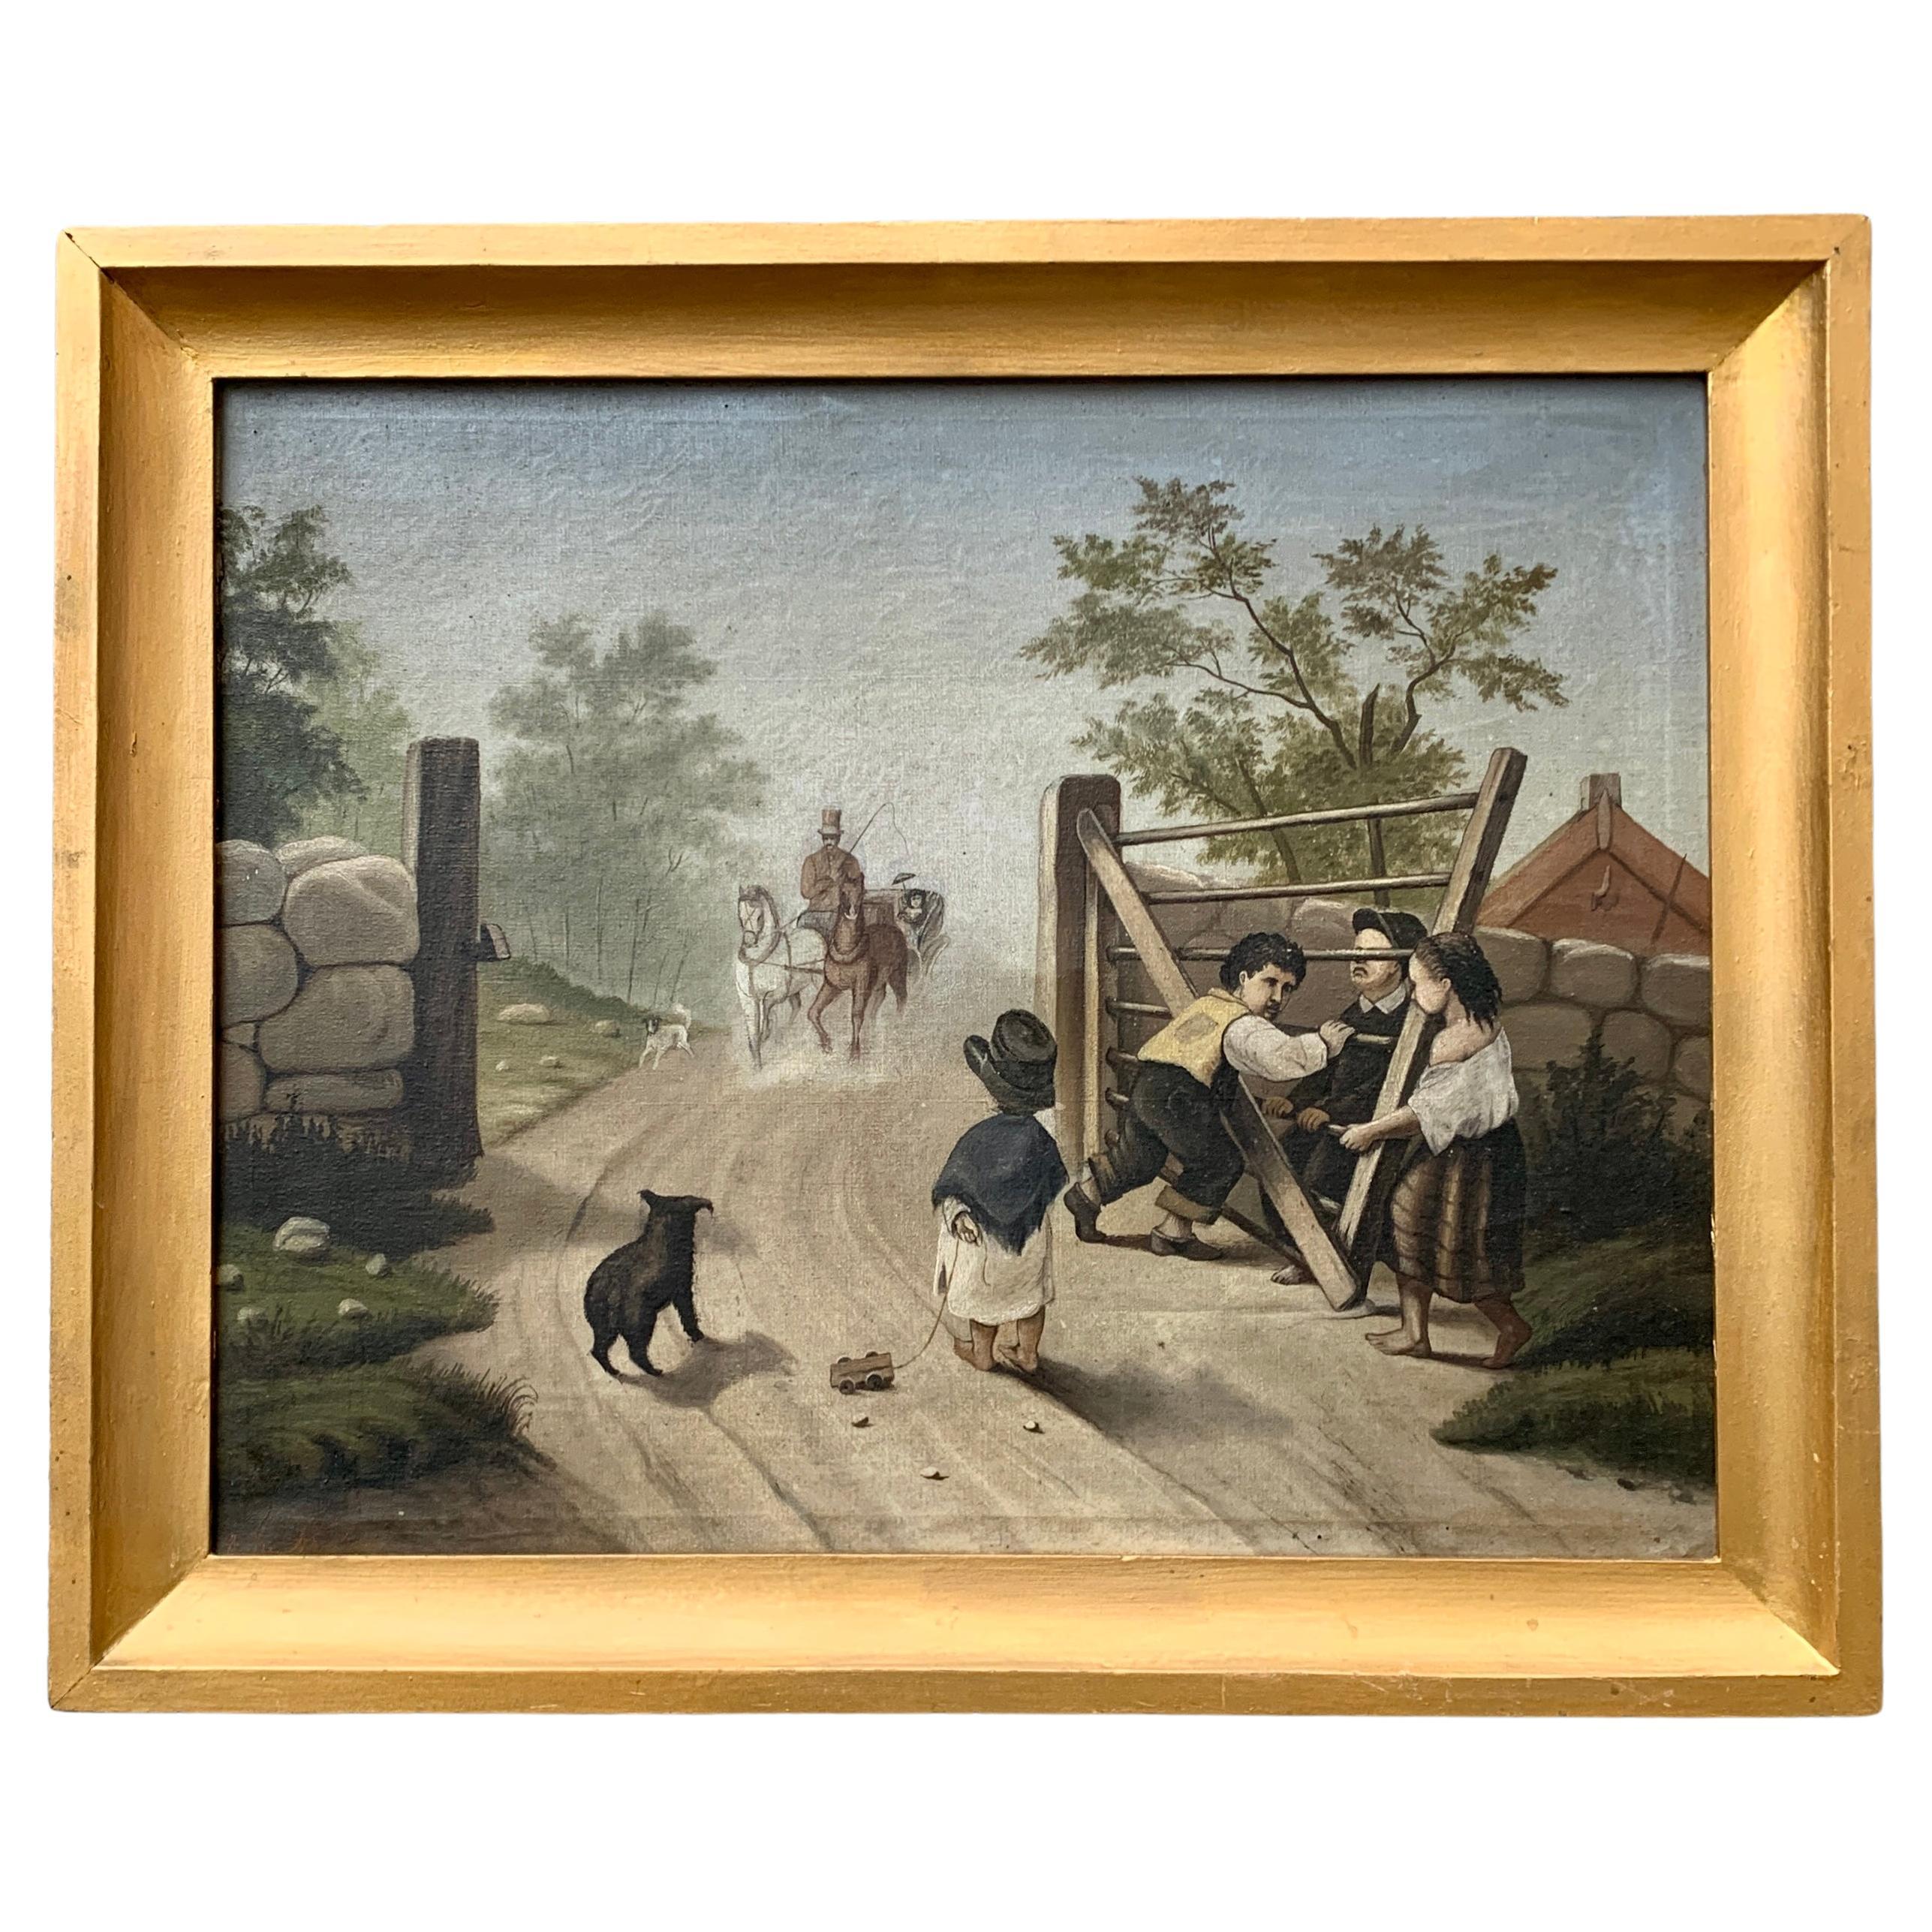 Pittura ad olio folkloristica svedese del XIX secolo con bambini